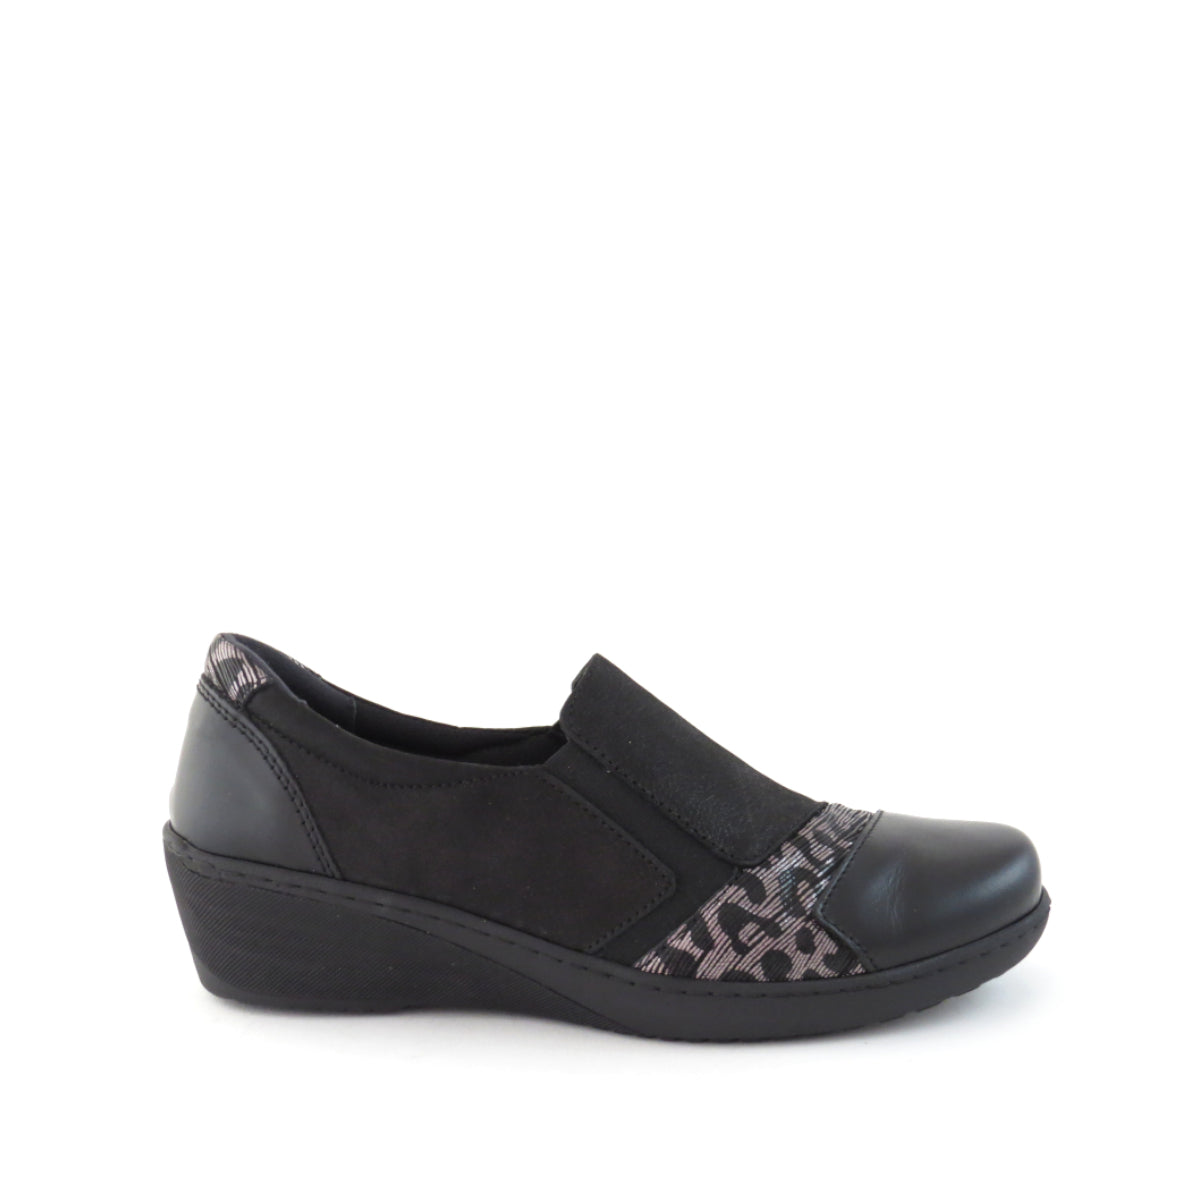 CP461-18 - shoe&amp;me - Cabello - Shoe - Shoes, Winter, Womens